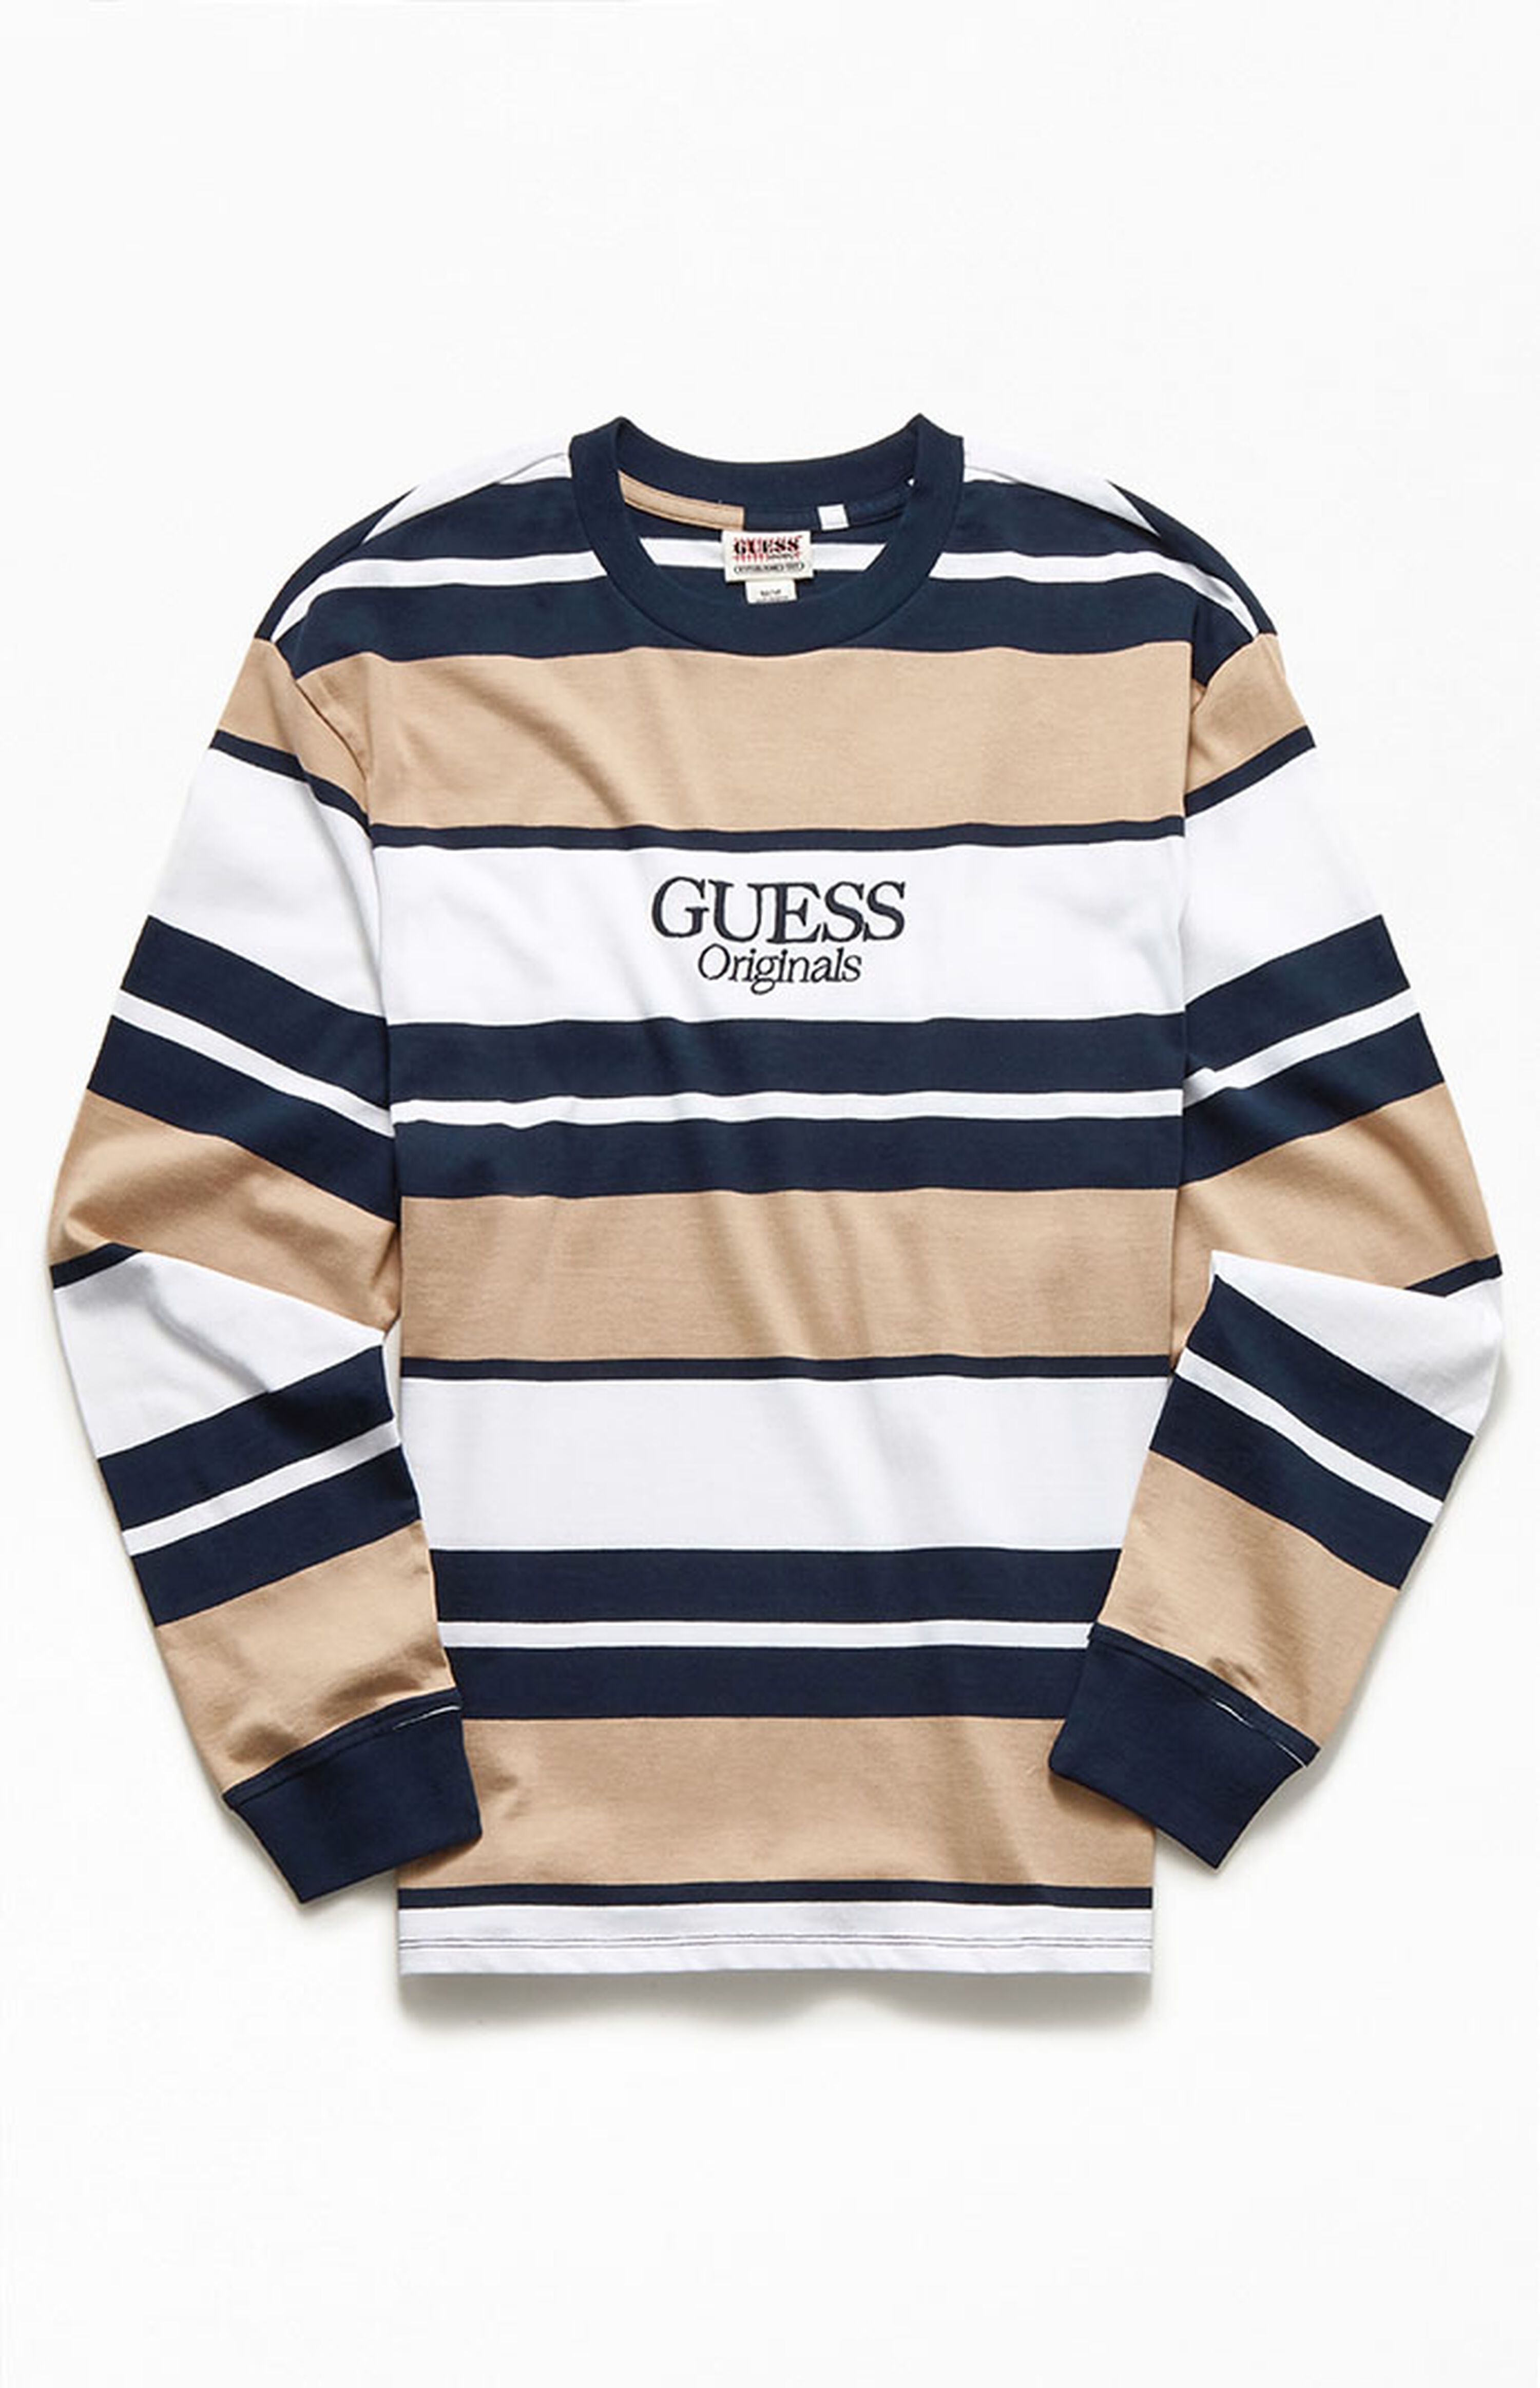 GUESS Originals Aiden Striped Long Sleeve T-Shirt | PacSun | PacSun